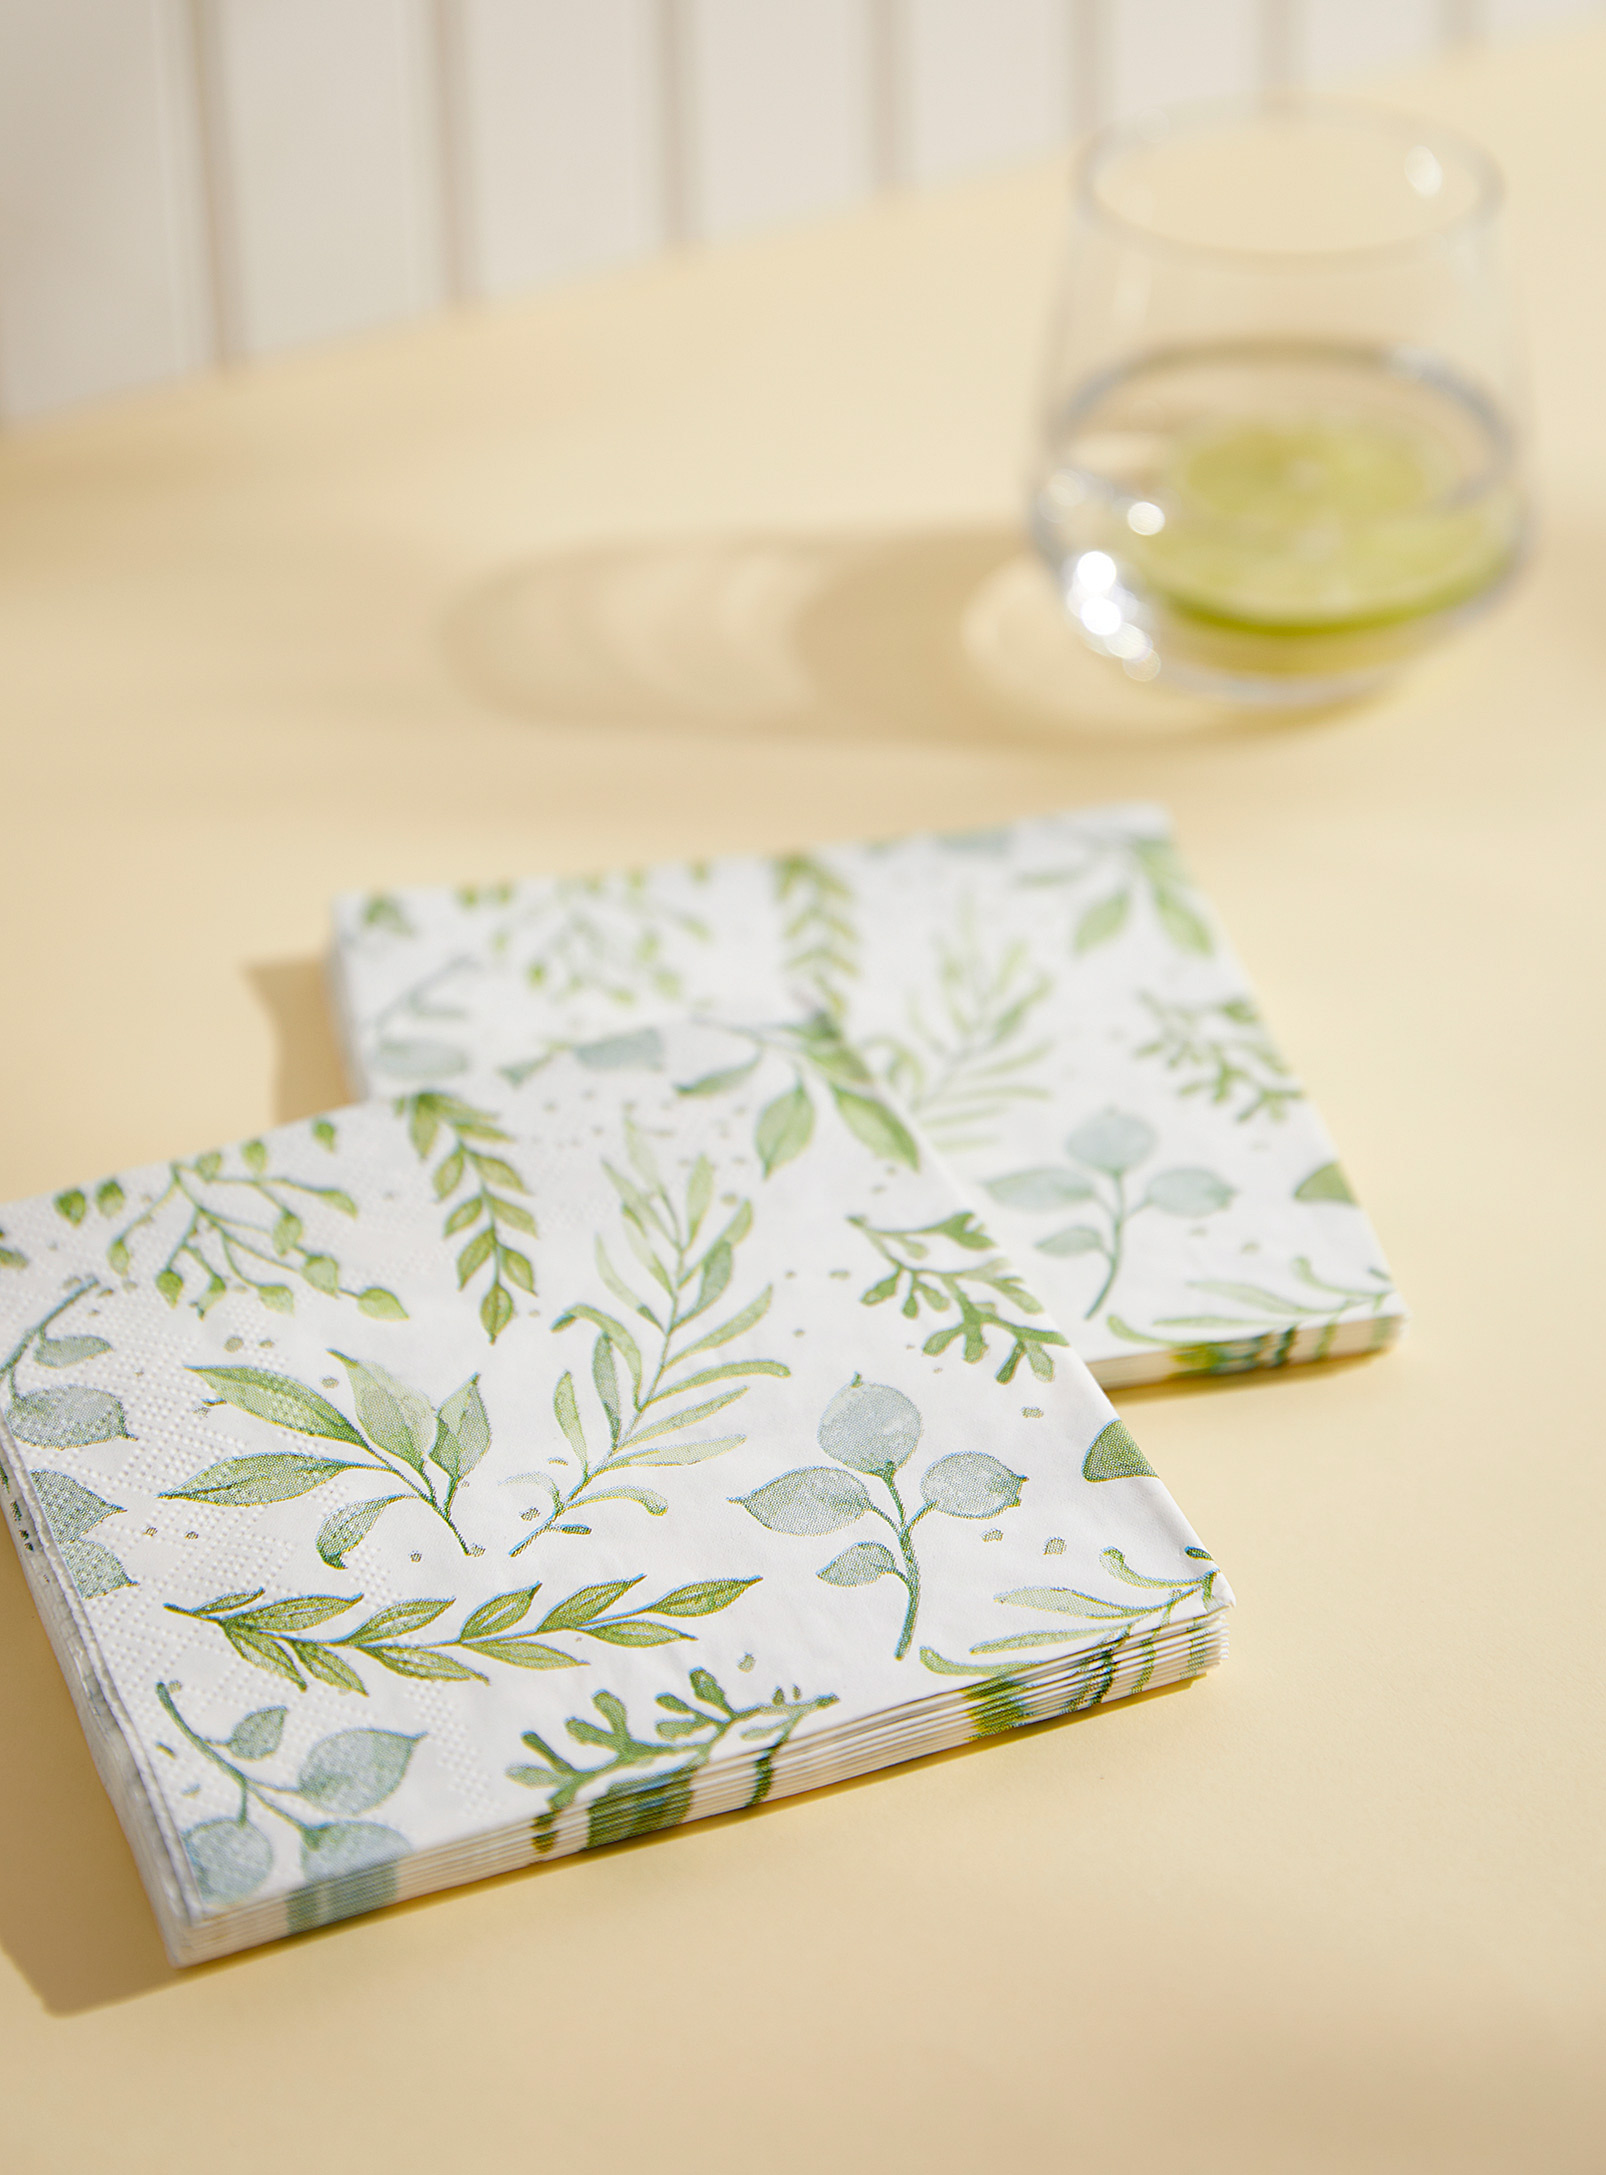 Simons Maison - Green leaves paper napkins 13 x 13 cm. Pack of 20.